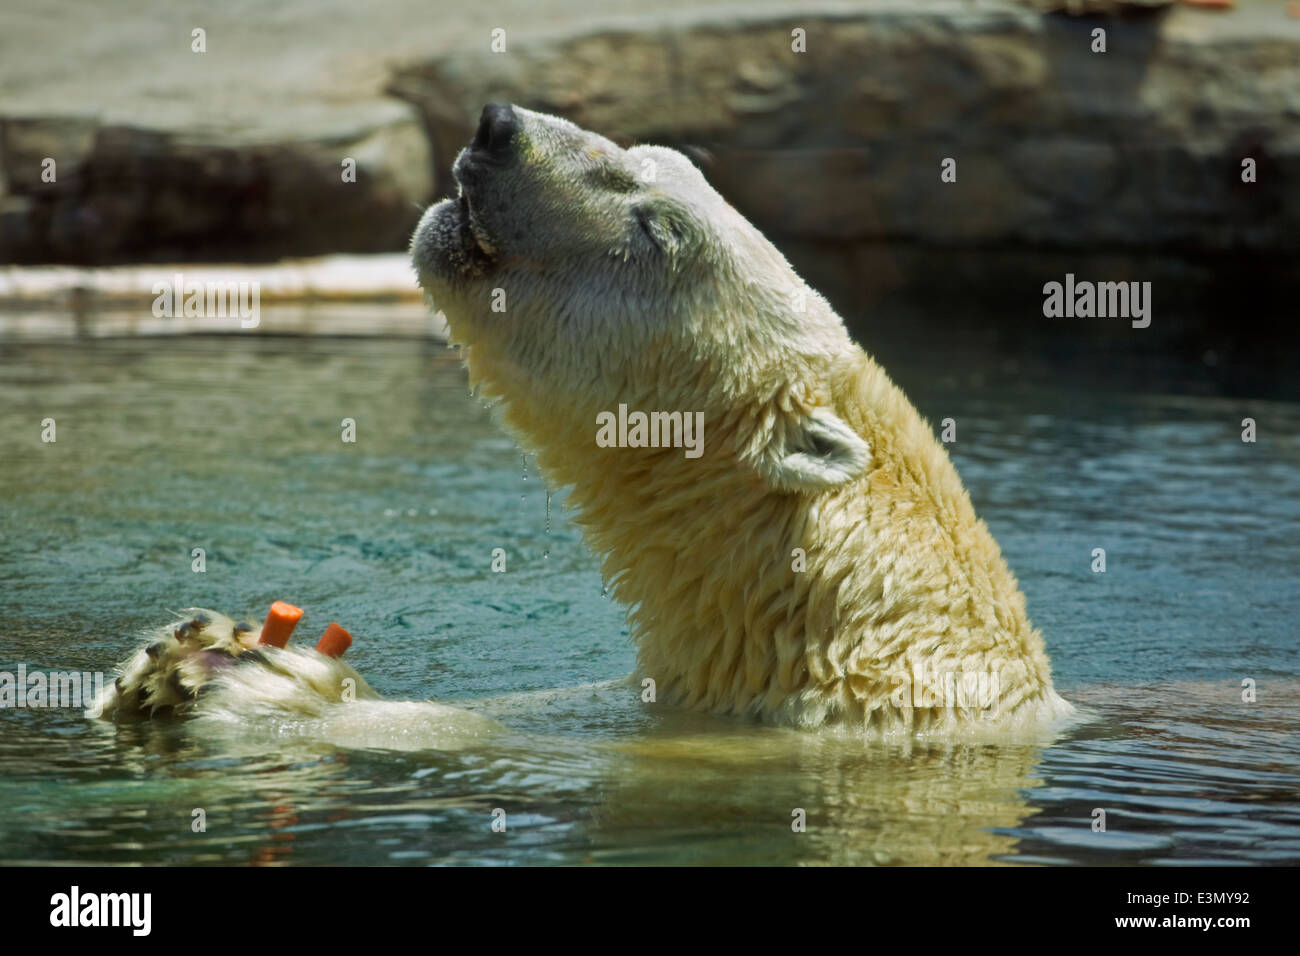 A POLAR BEAR (Ursus maritimus) in a pool at the SAN DIEGO ZOO - CALIFORNIA Stock Photo